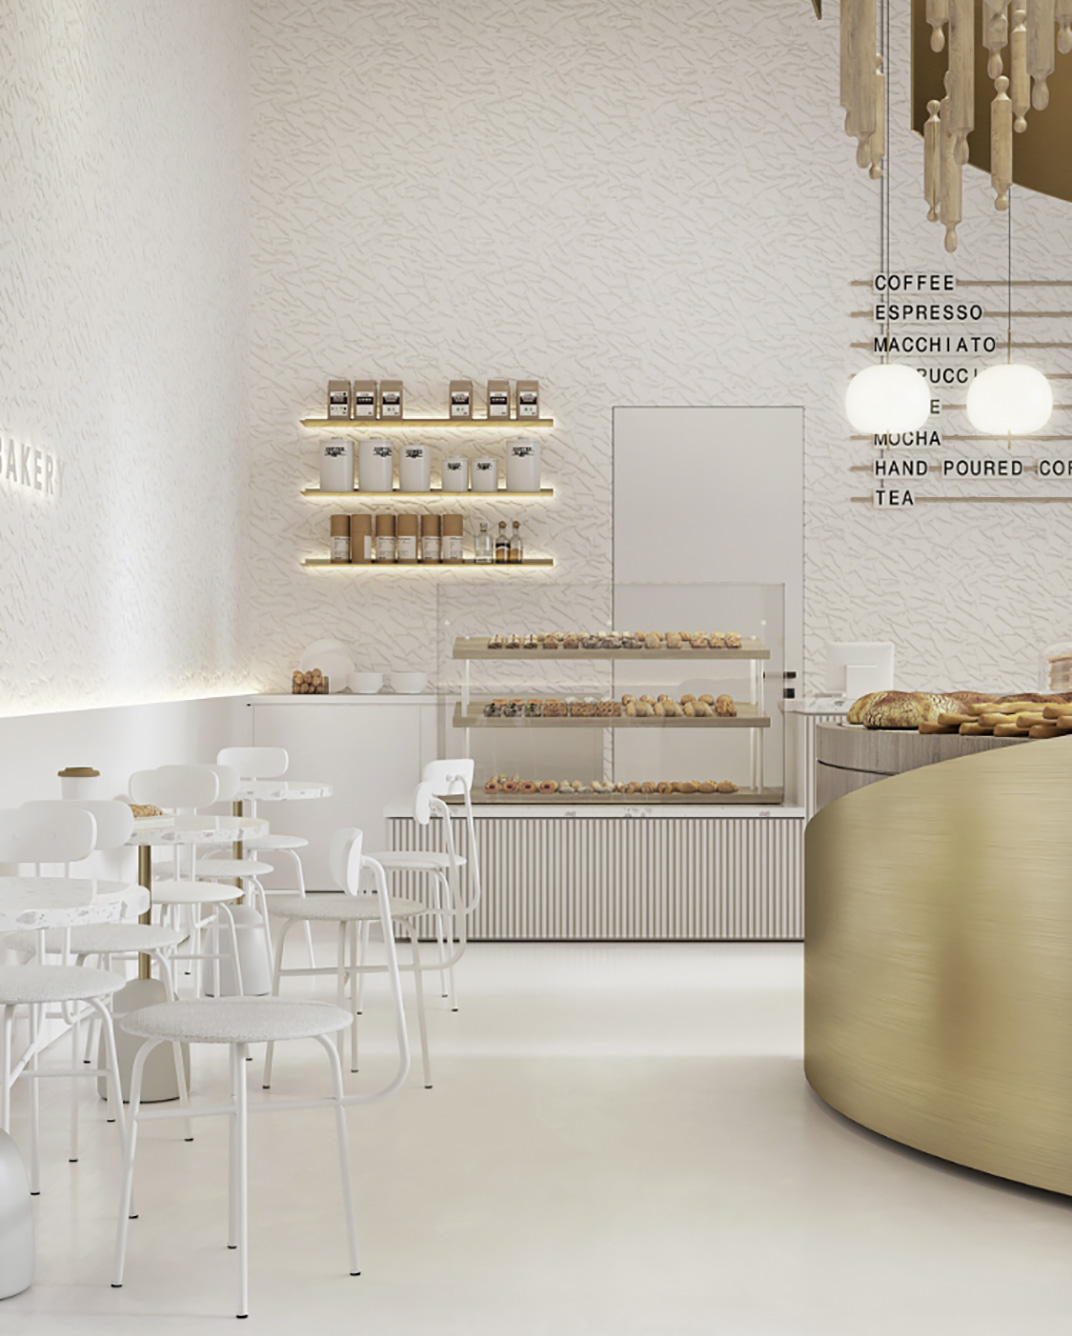 面包店BIKSOLT'S BAKERY 俄罗斯 面包店 极简主义 阵列空间 木头 不锈钢 logo设计 vi设计 空间设计